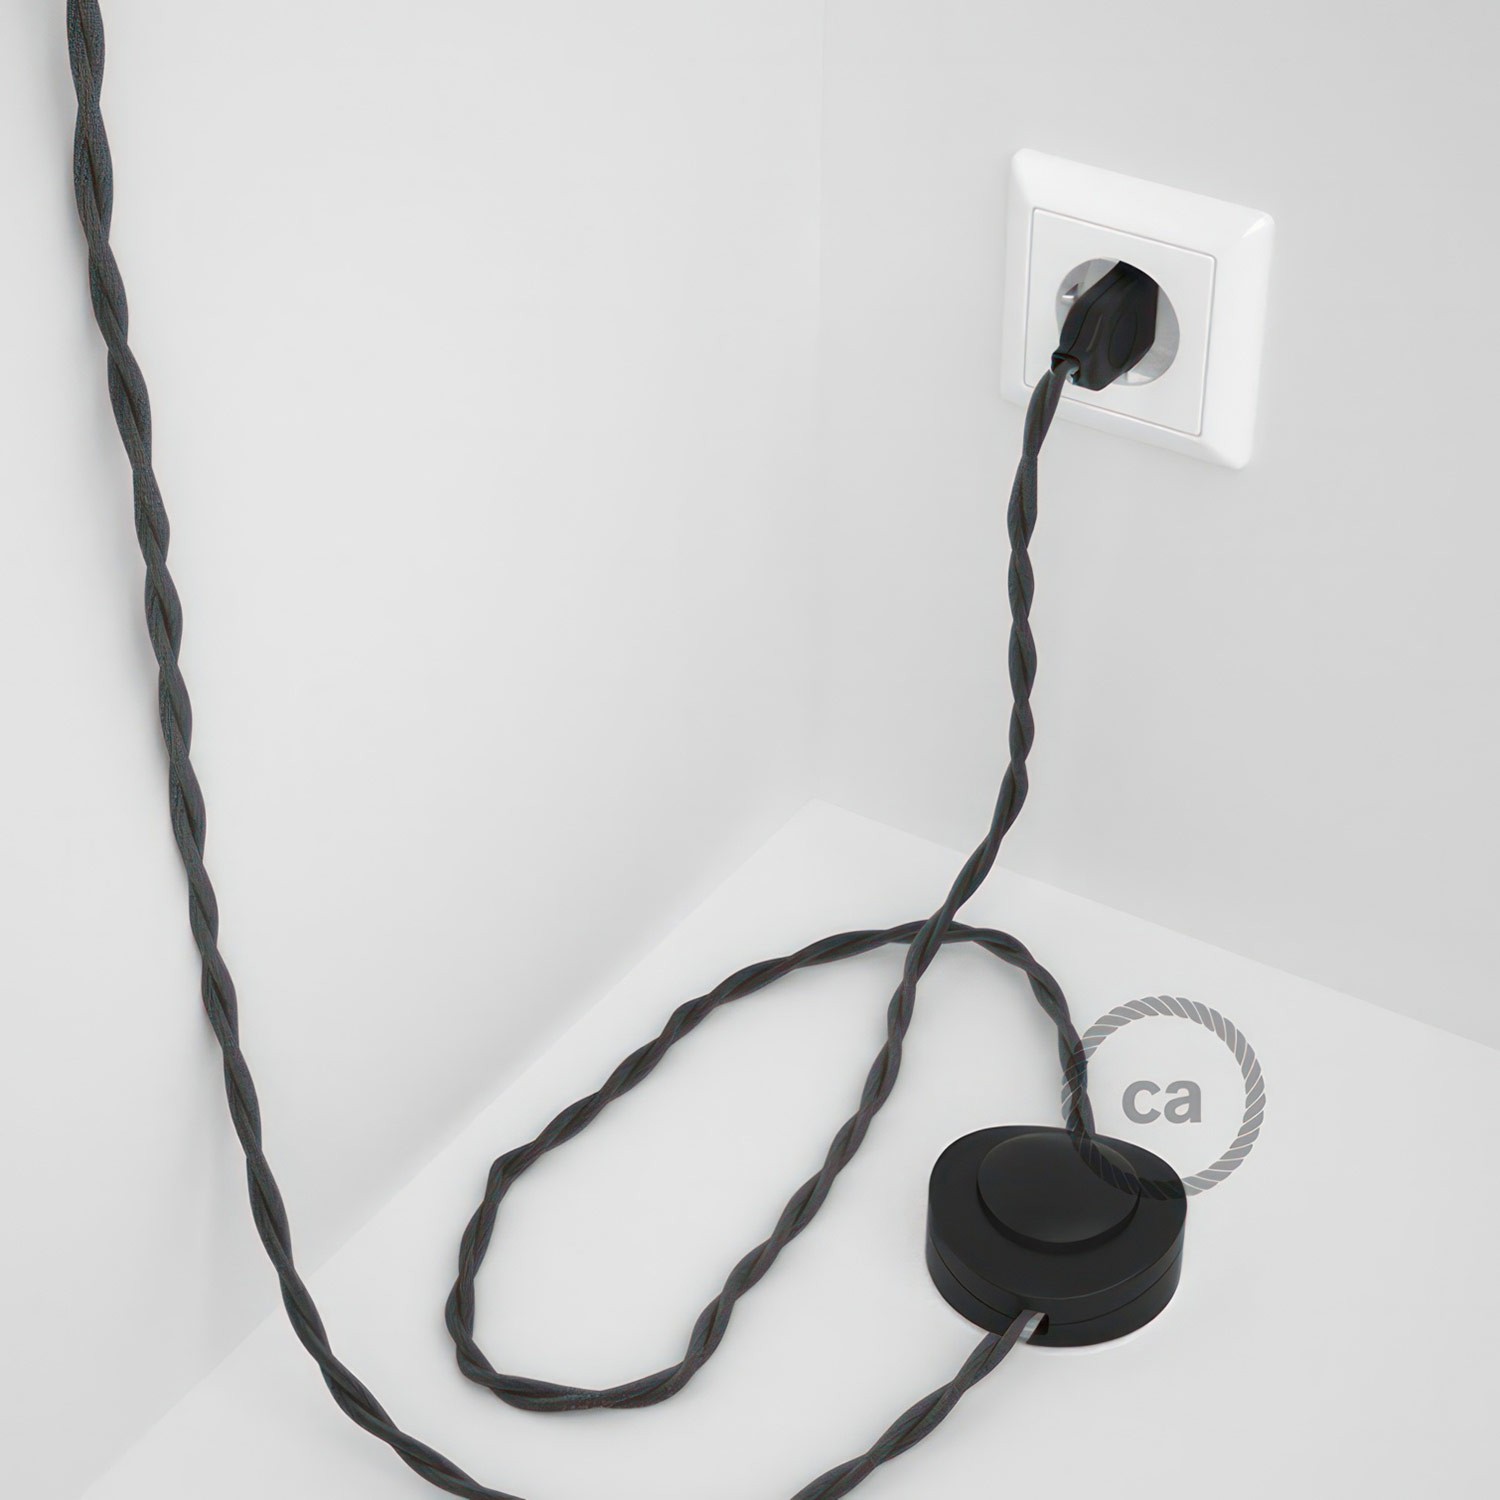 Cableado para lámpara de pie, cable TM26 Efecto Seda Gris Oscuro 3 m. Elige tu el color de la clavija y del interruptor!